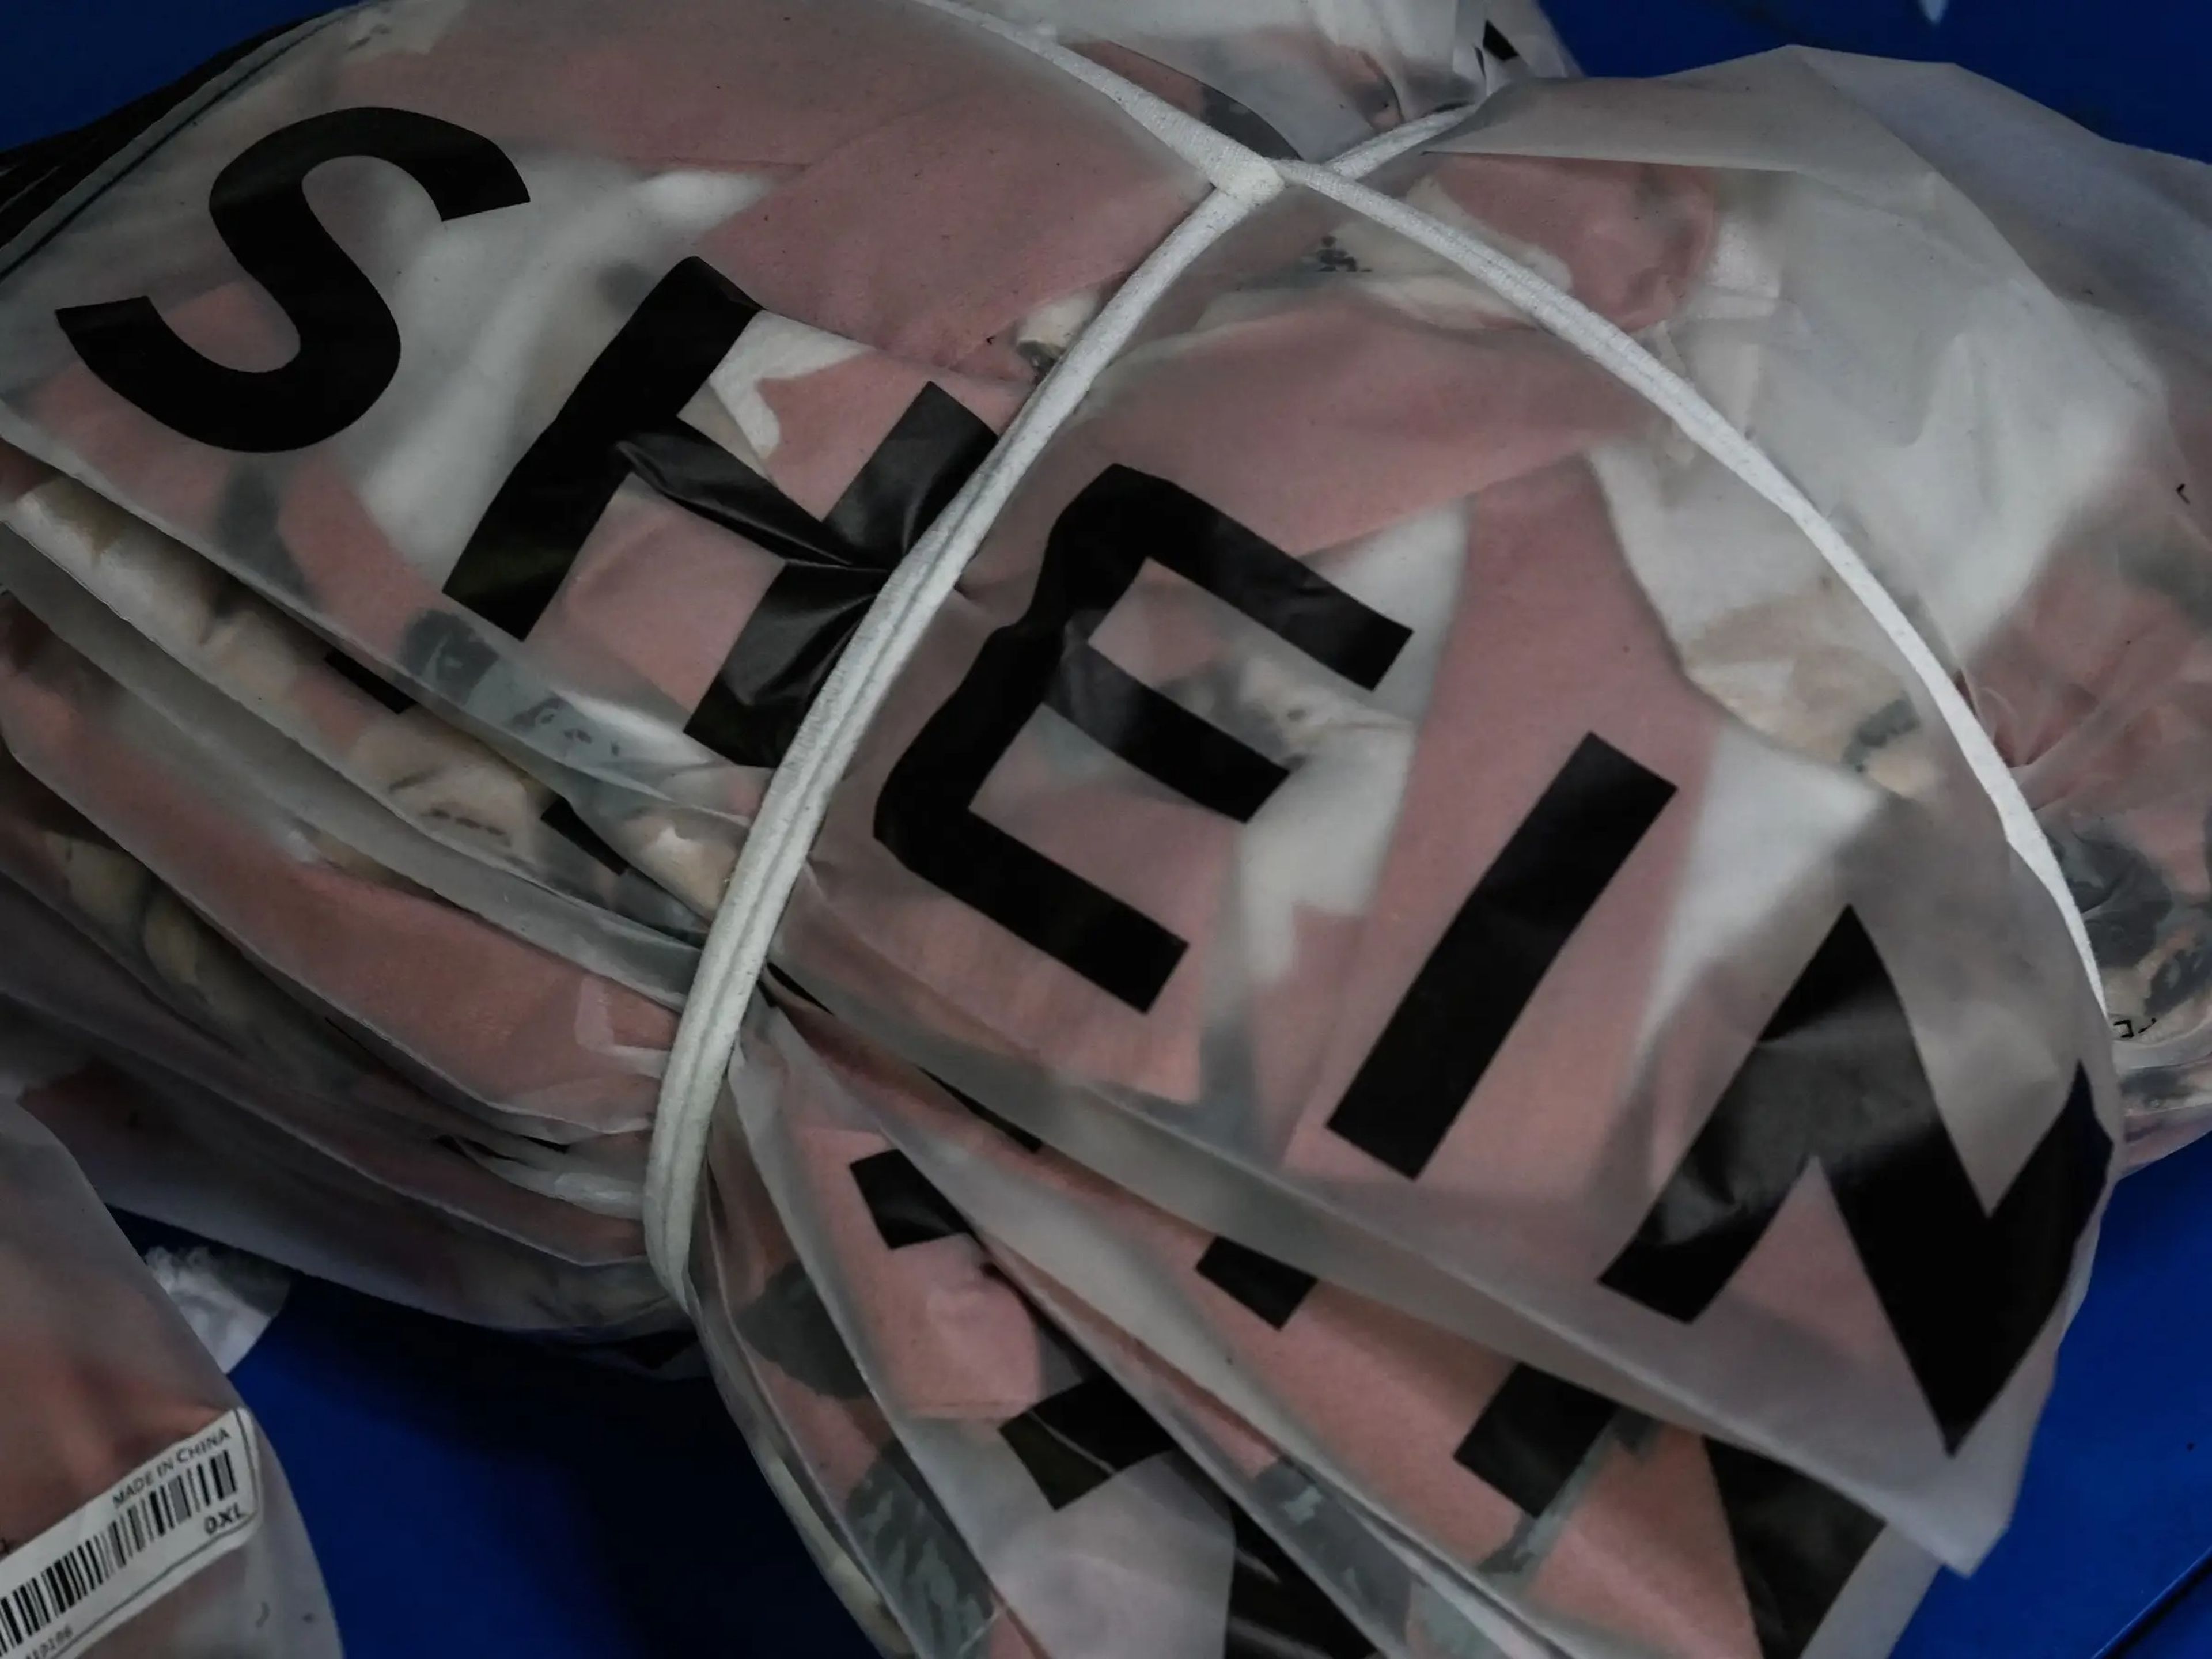 Shein empieza a vender sus productos a través de  España